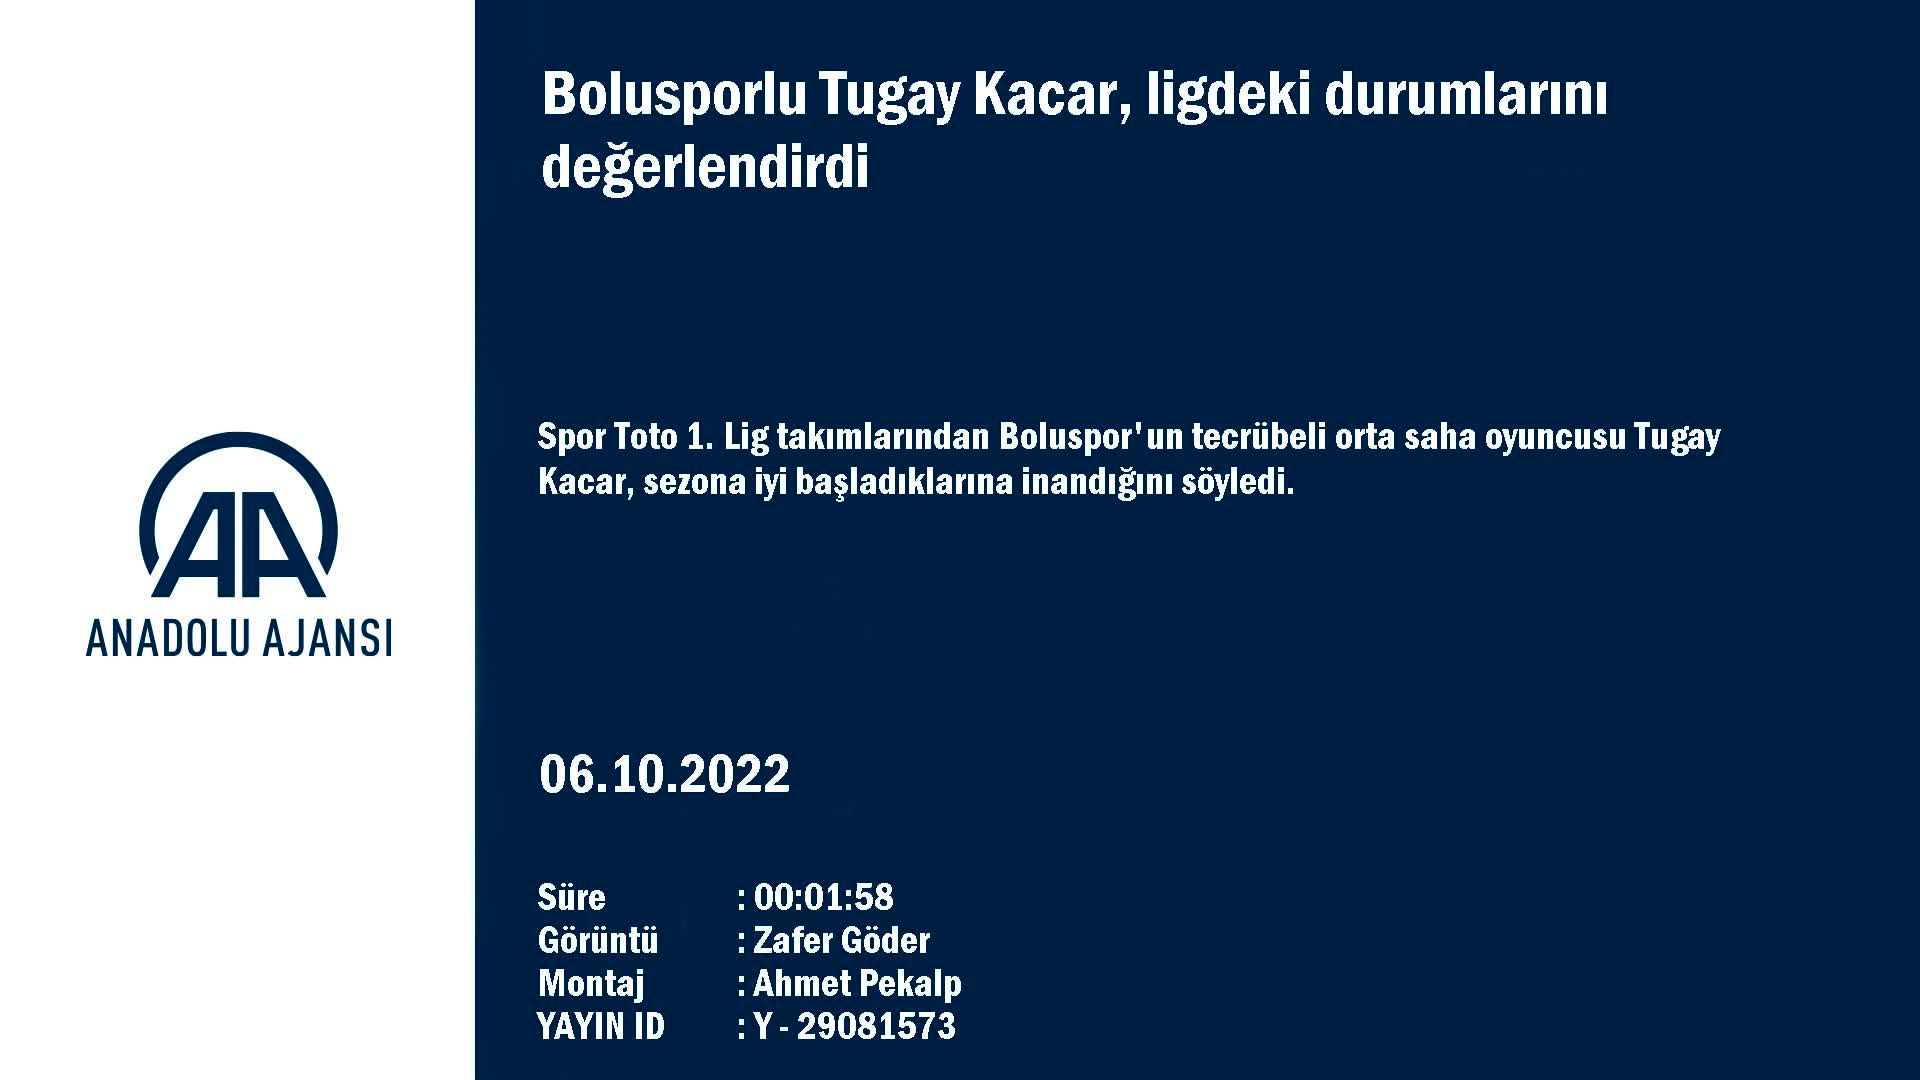 Bolusporlu Tugay Kacar, ligdeki durumlarını değerlendirdi: